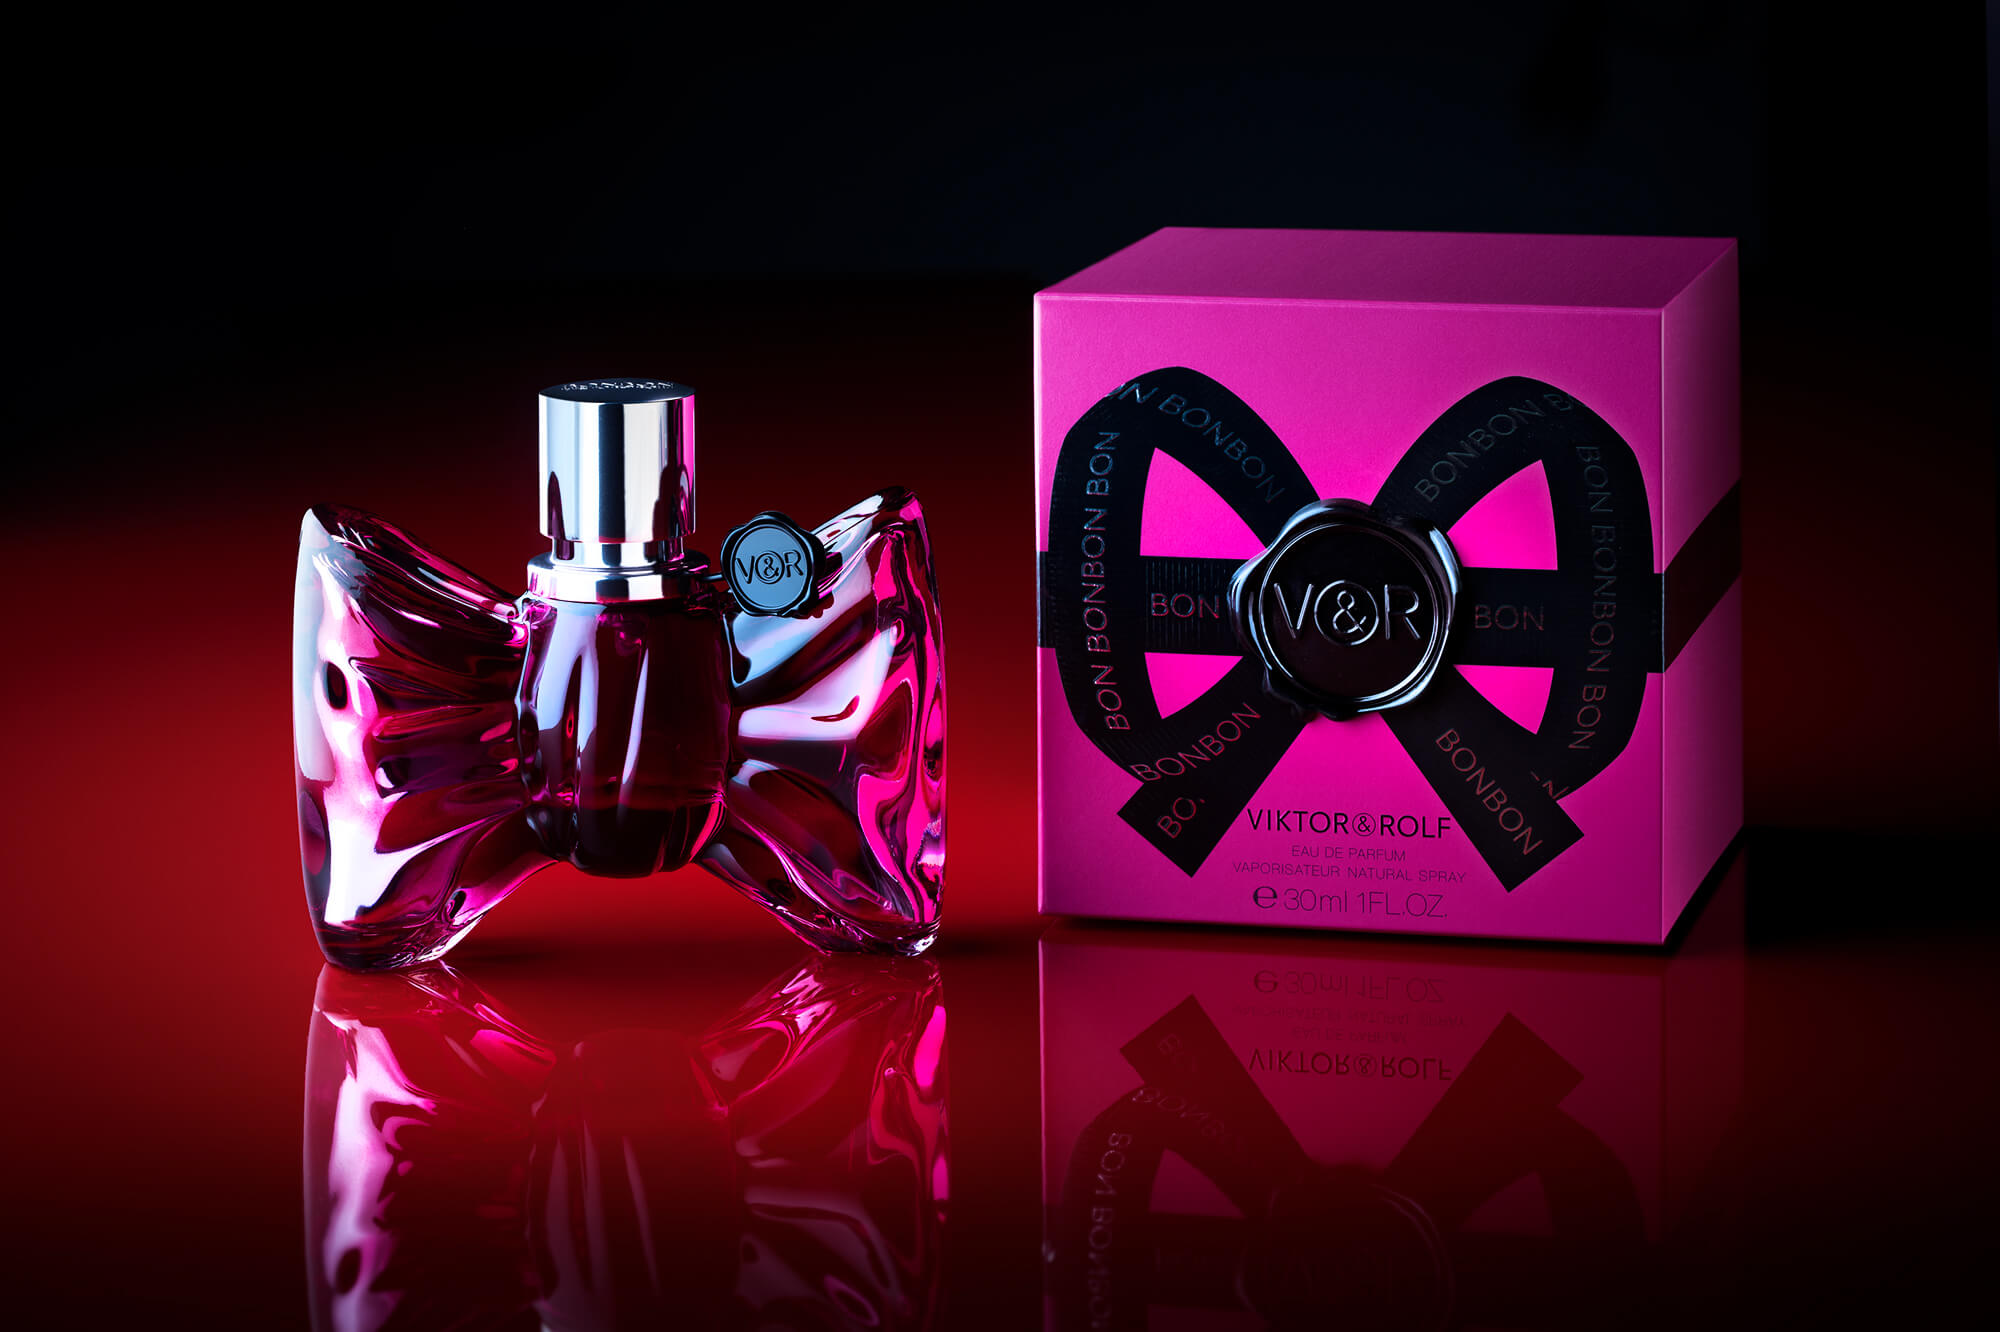 photo de packshot pour le parfum Bonbon de chez Viktor & Rolf par Antoine Duchene photographe